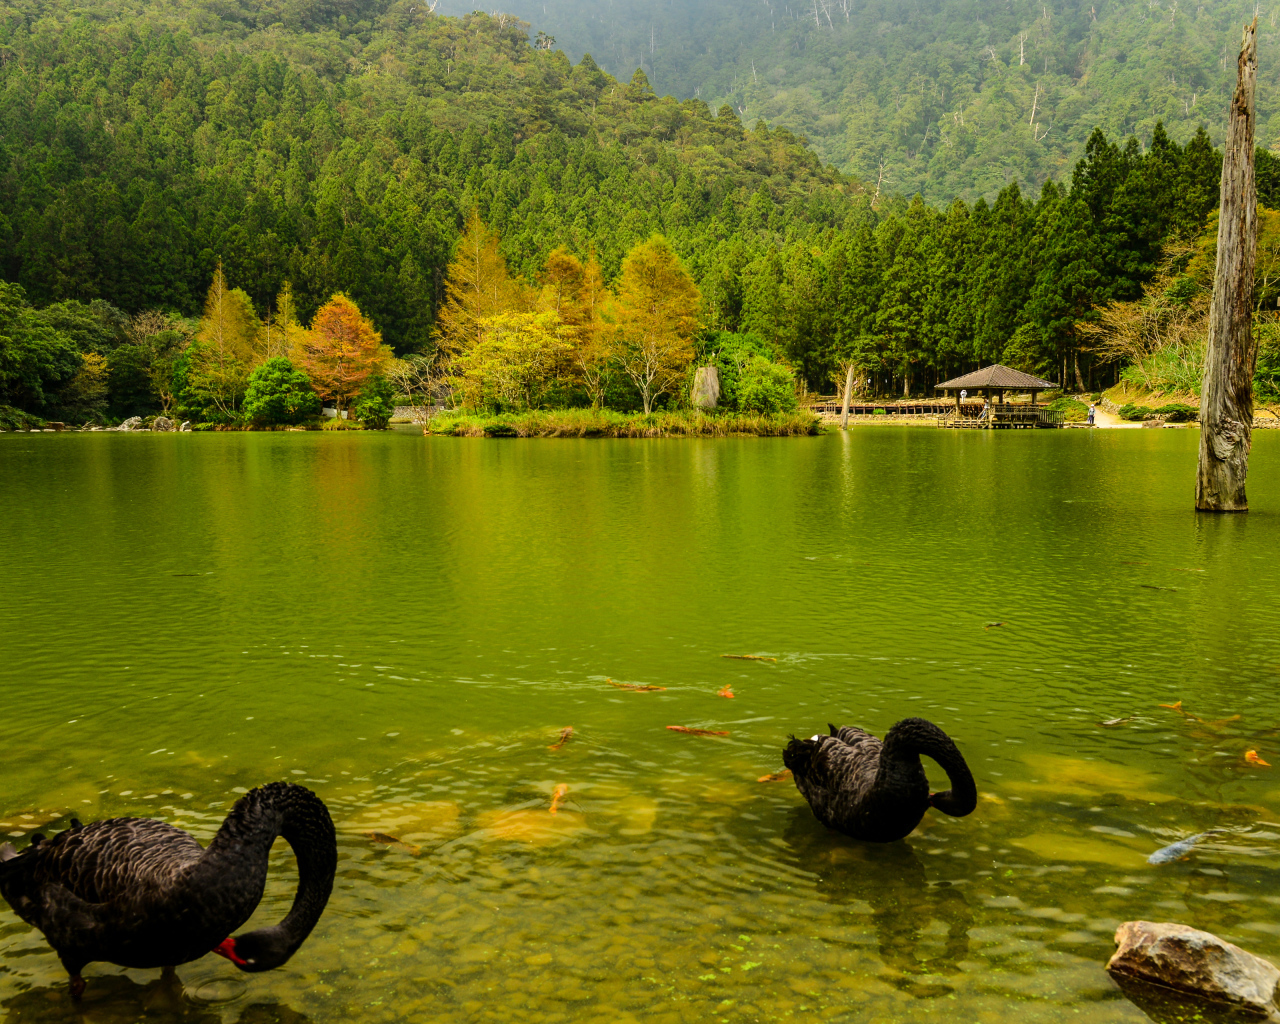 Черные лебеди в пруду на фоне красивого зеленого леса, Япония